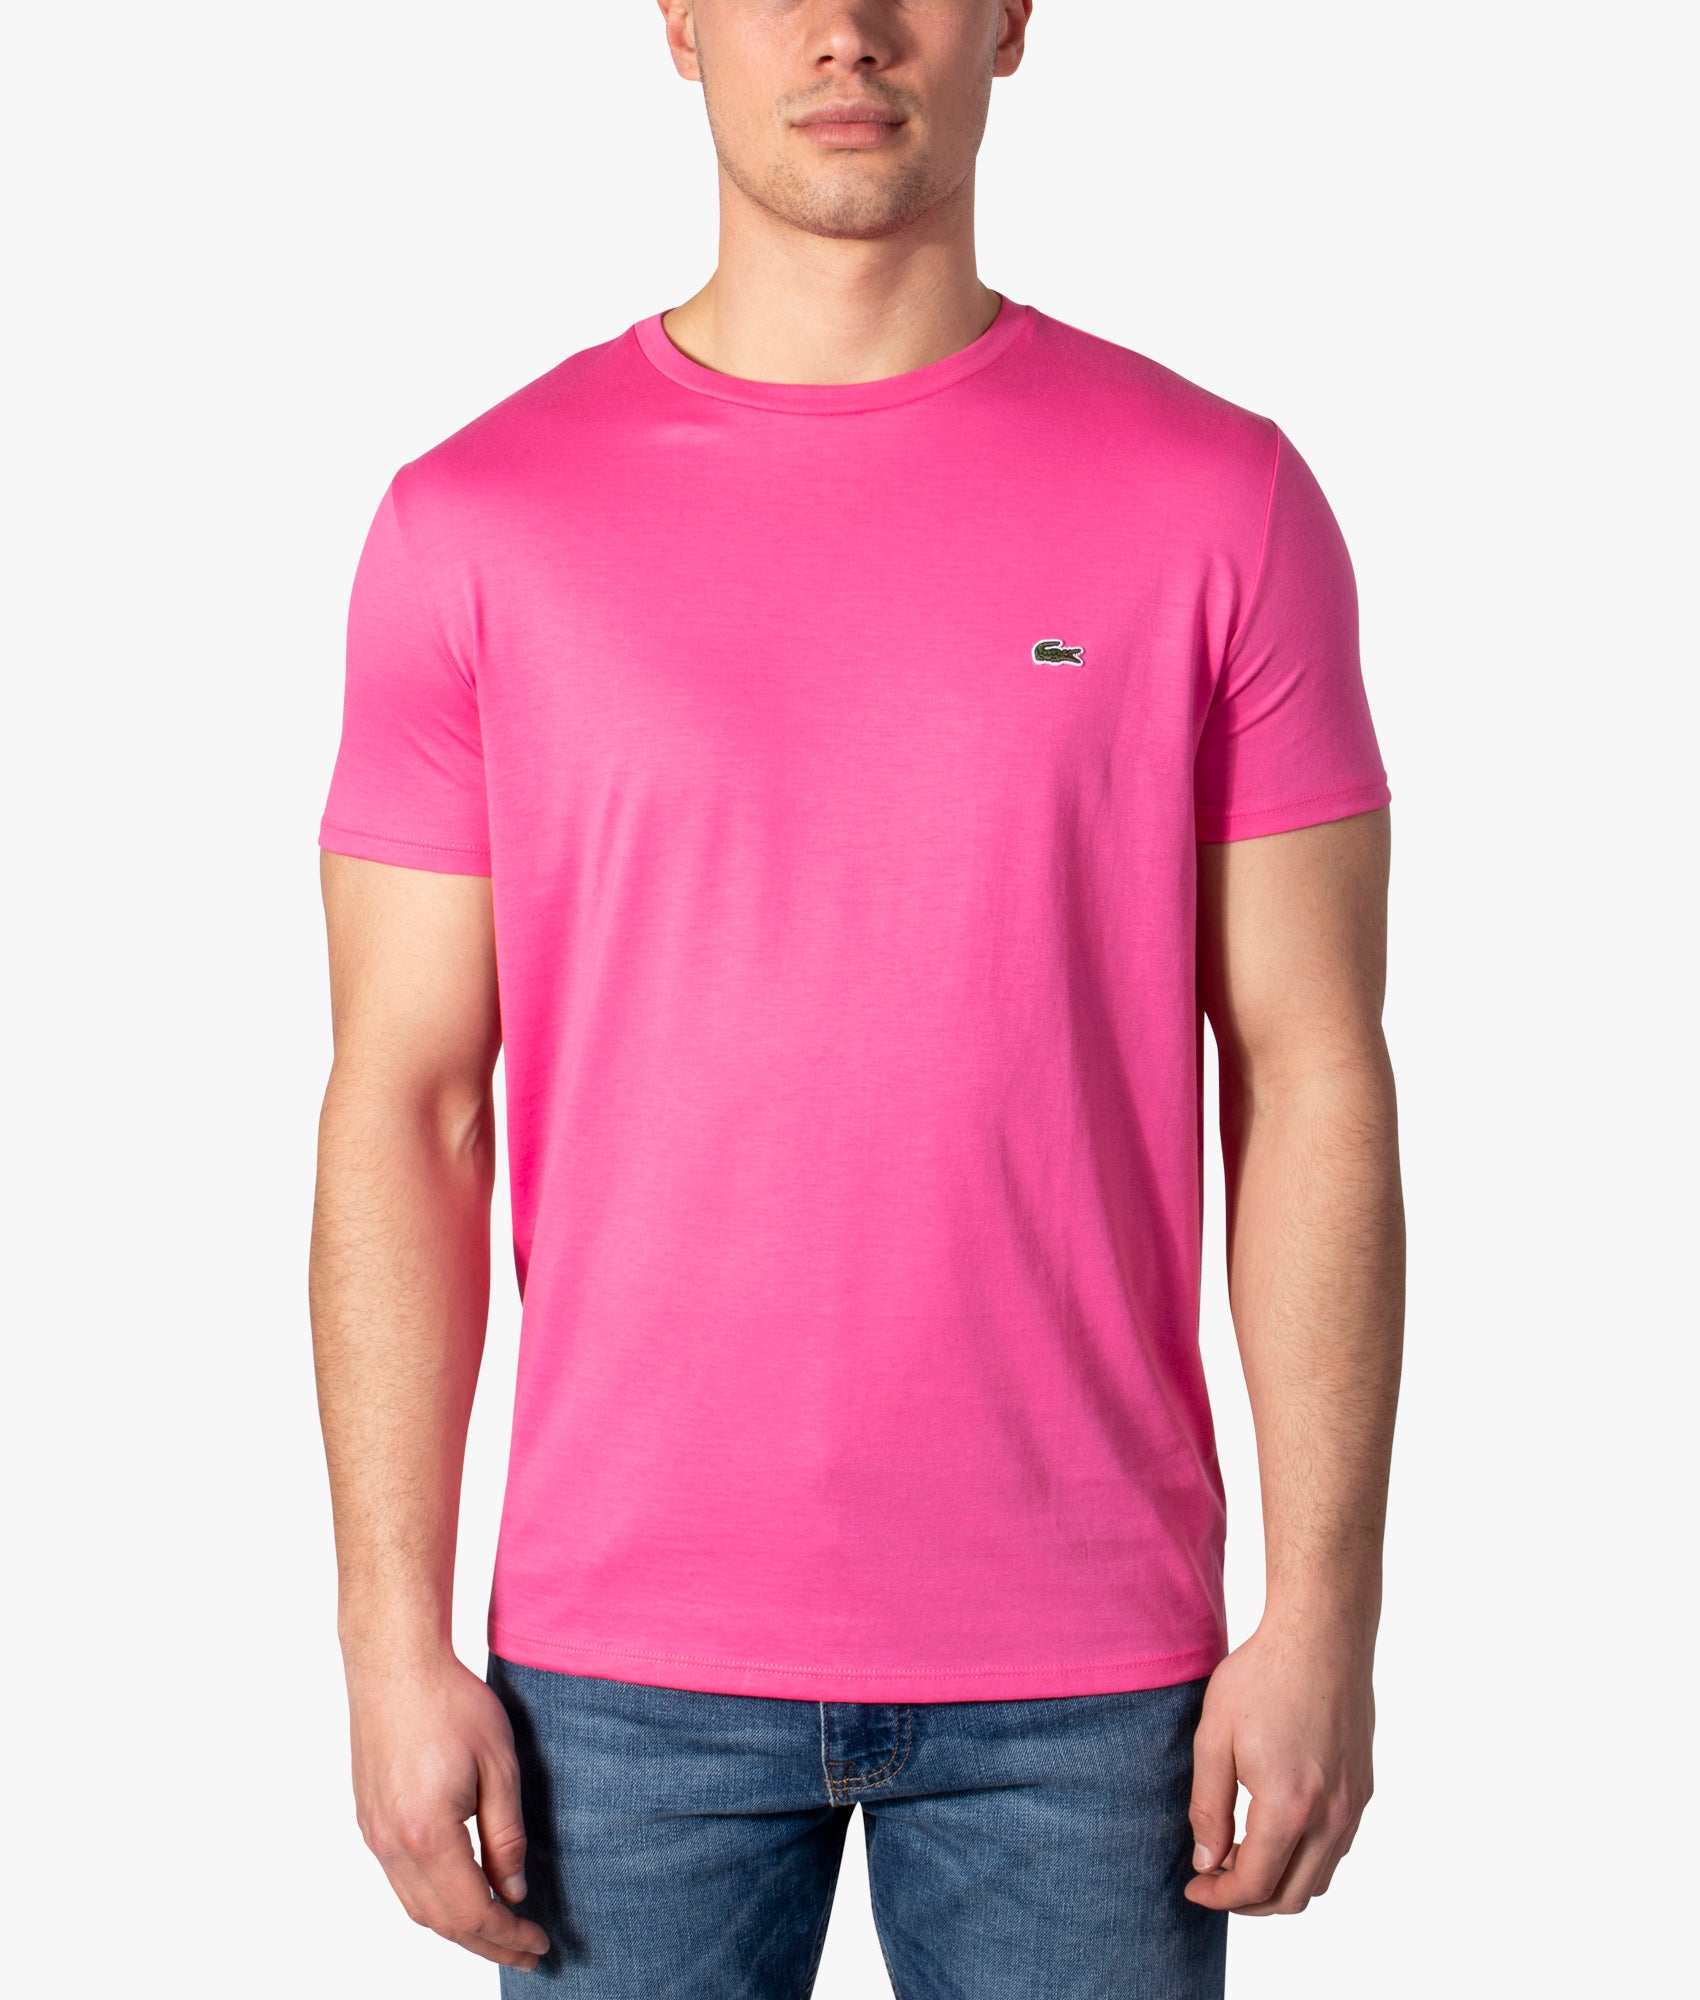 Pima Cotton Croc Logo T-shirt Pink | Lacoste | EQVVS